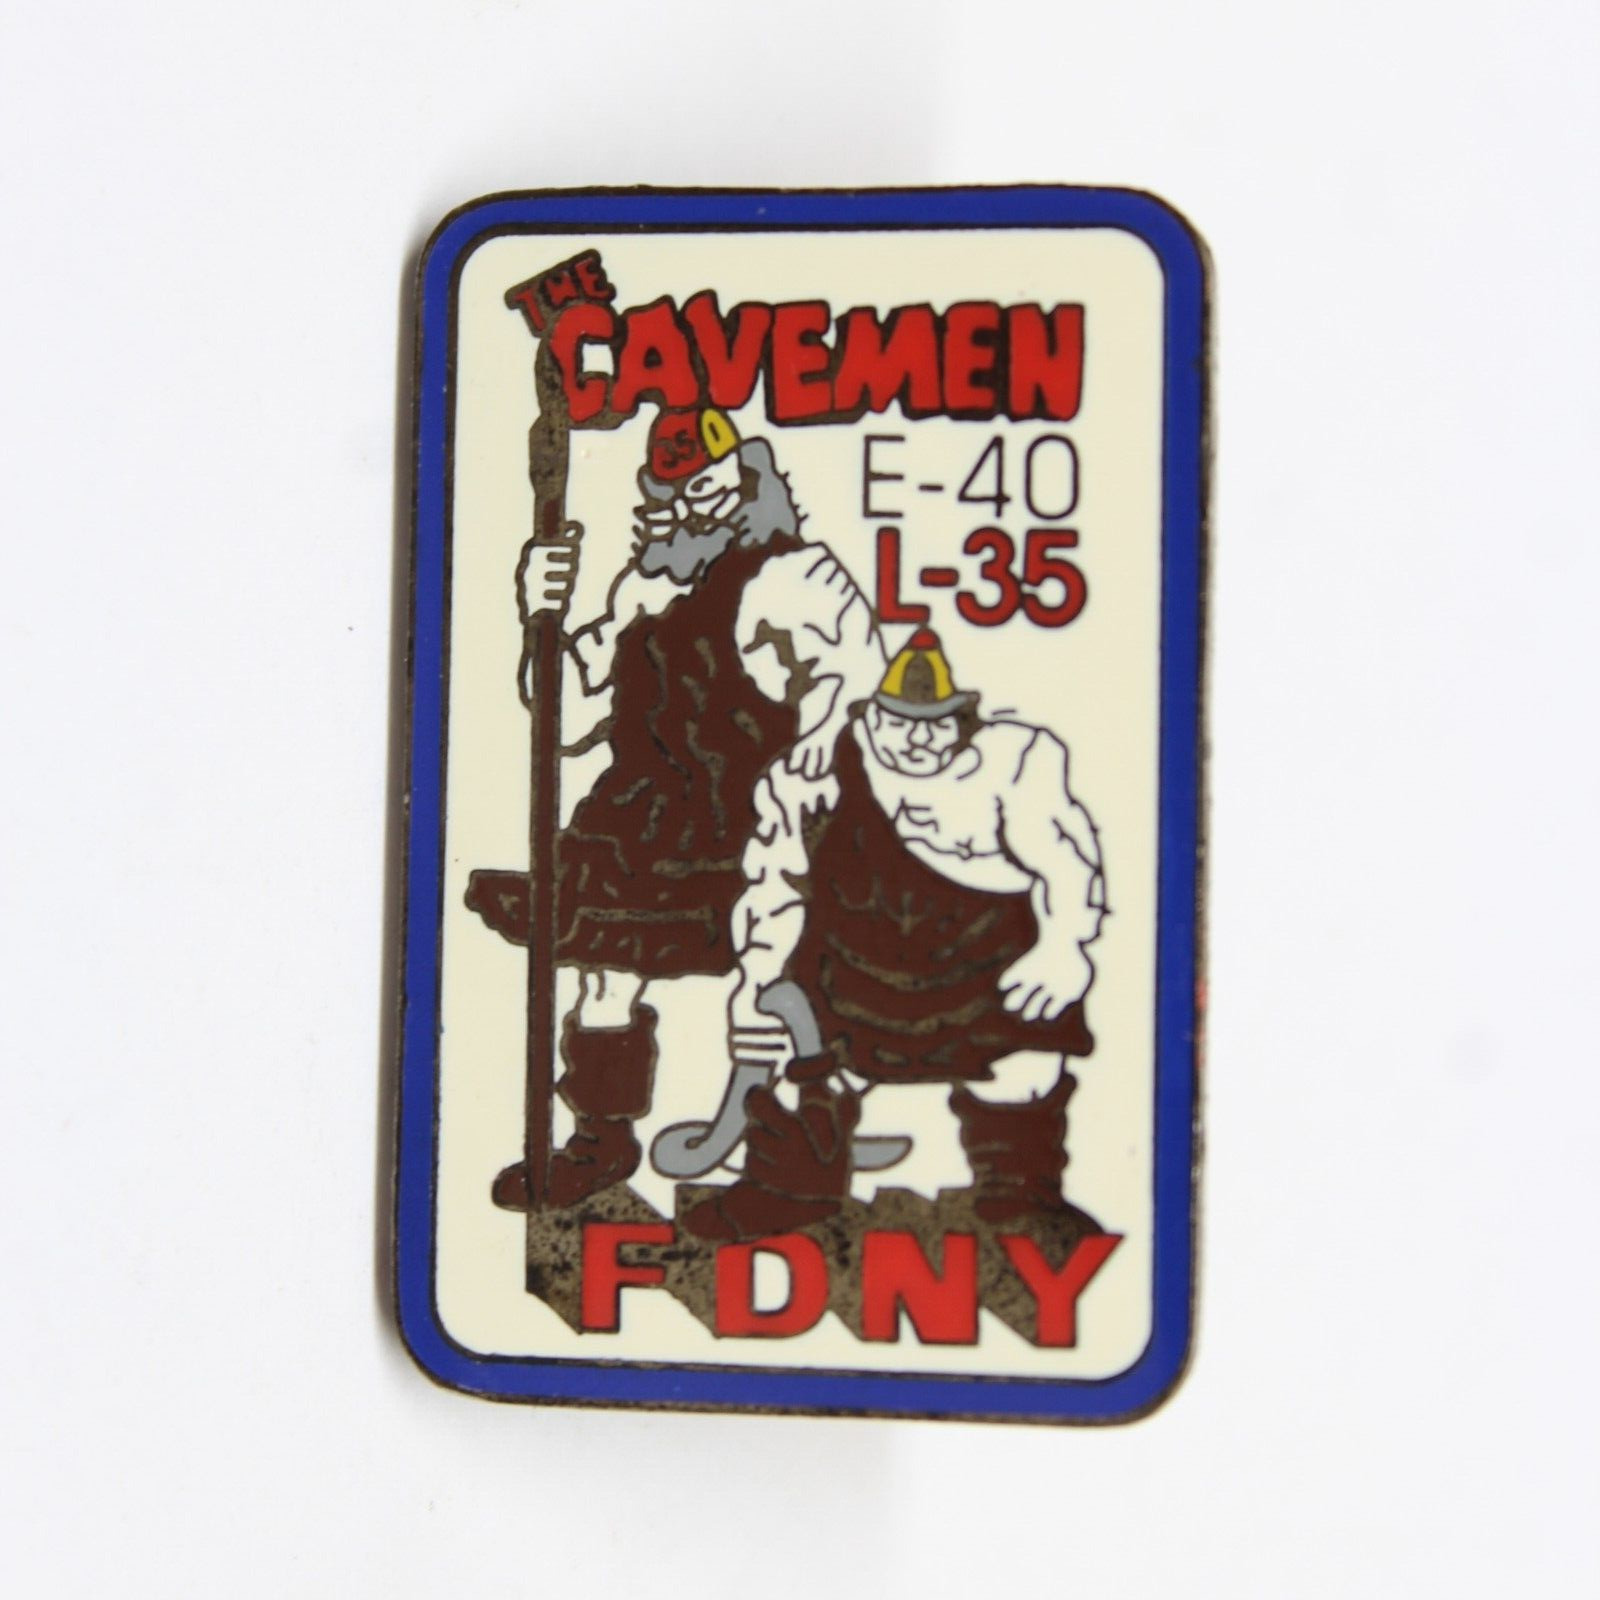 Cavemen E-40 L-35 FDNY Pin Lapel Enamel Collectible